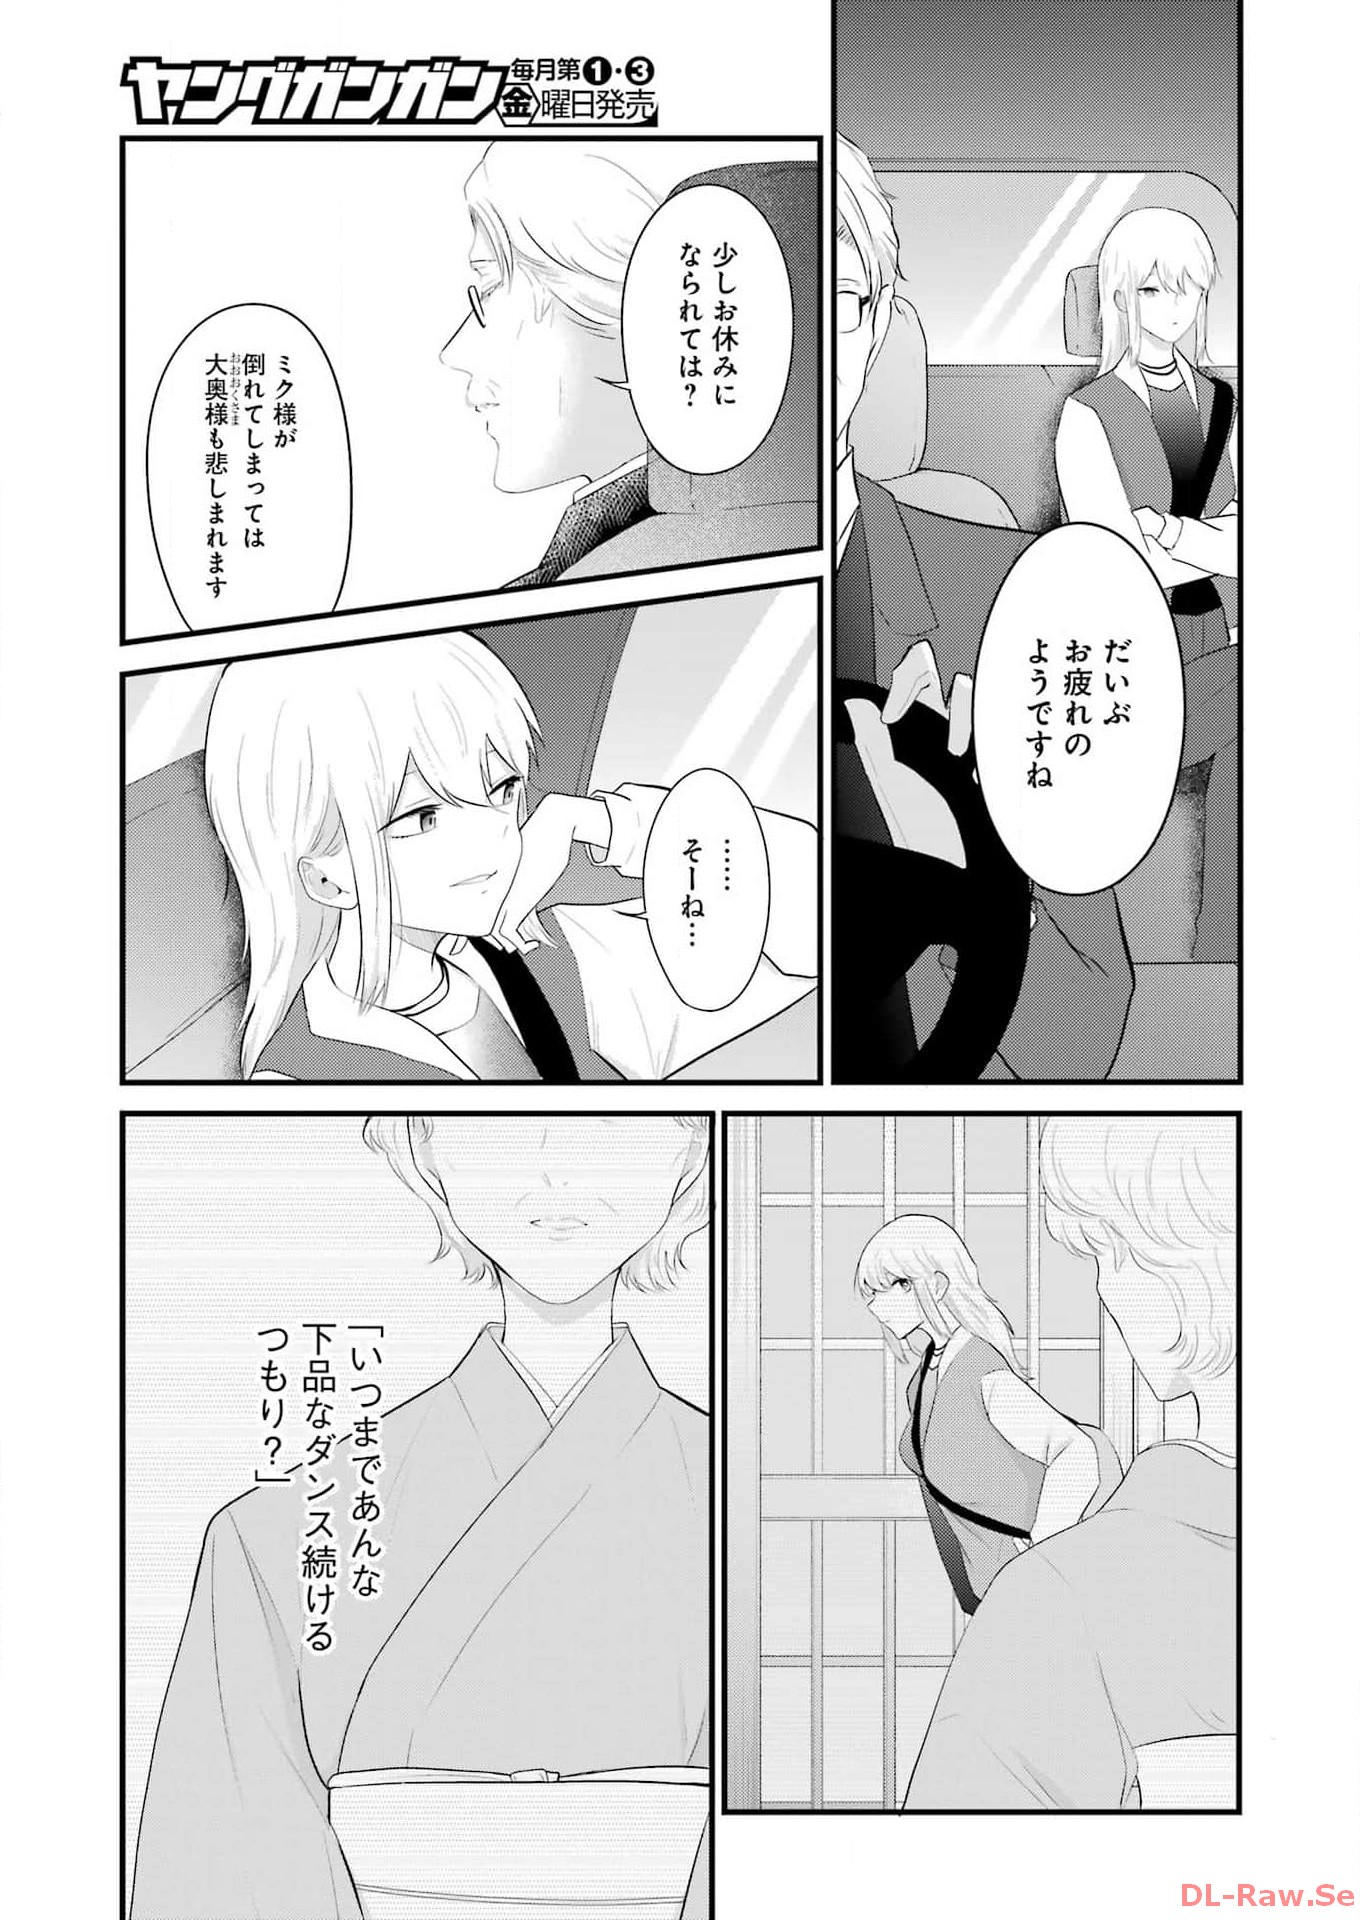 Oshi Wa Ose Rutokini Ose! - Chapter 37 - Page 3